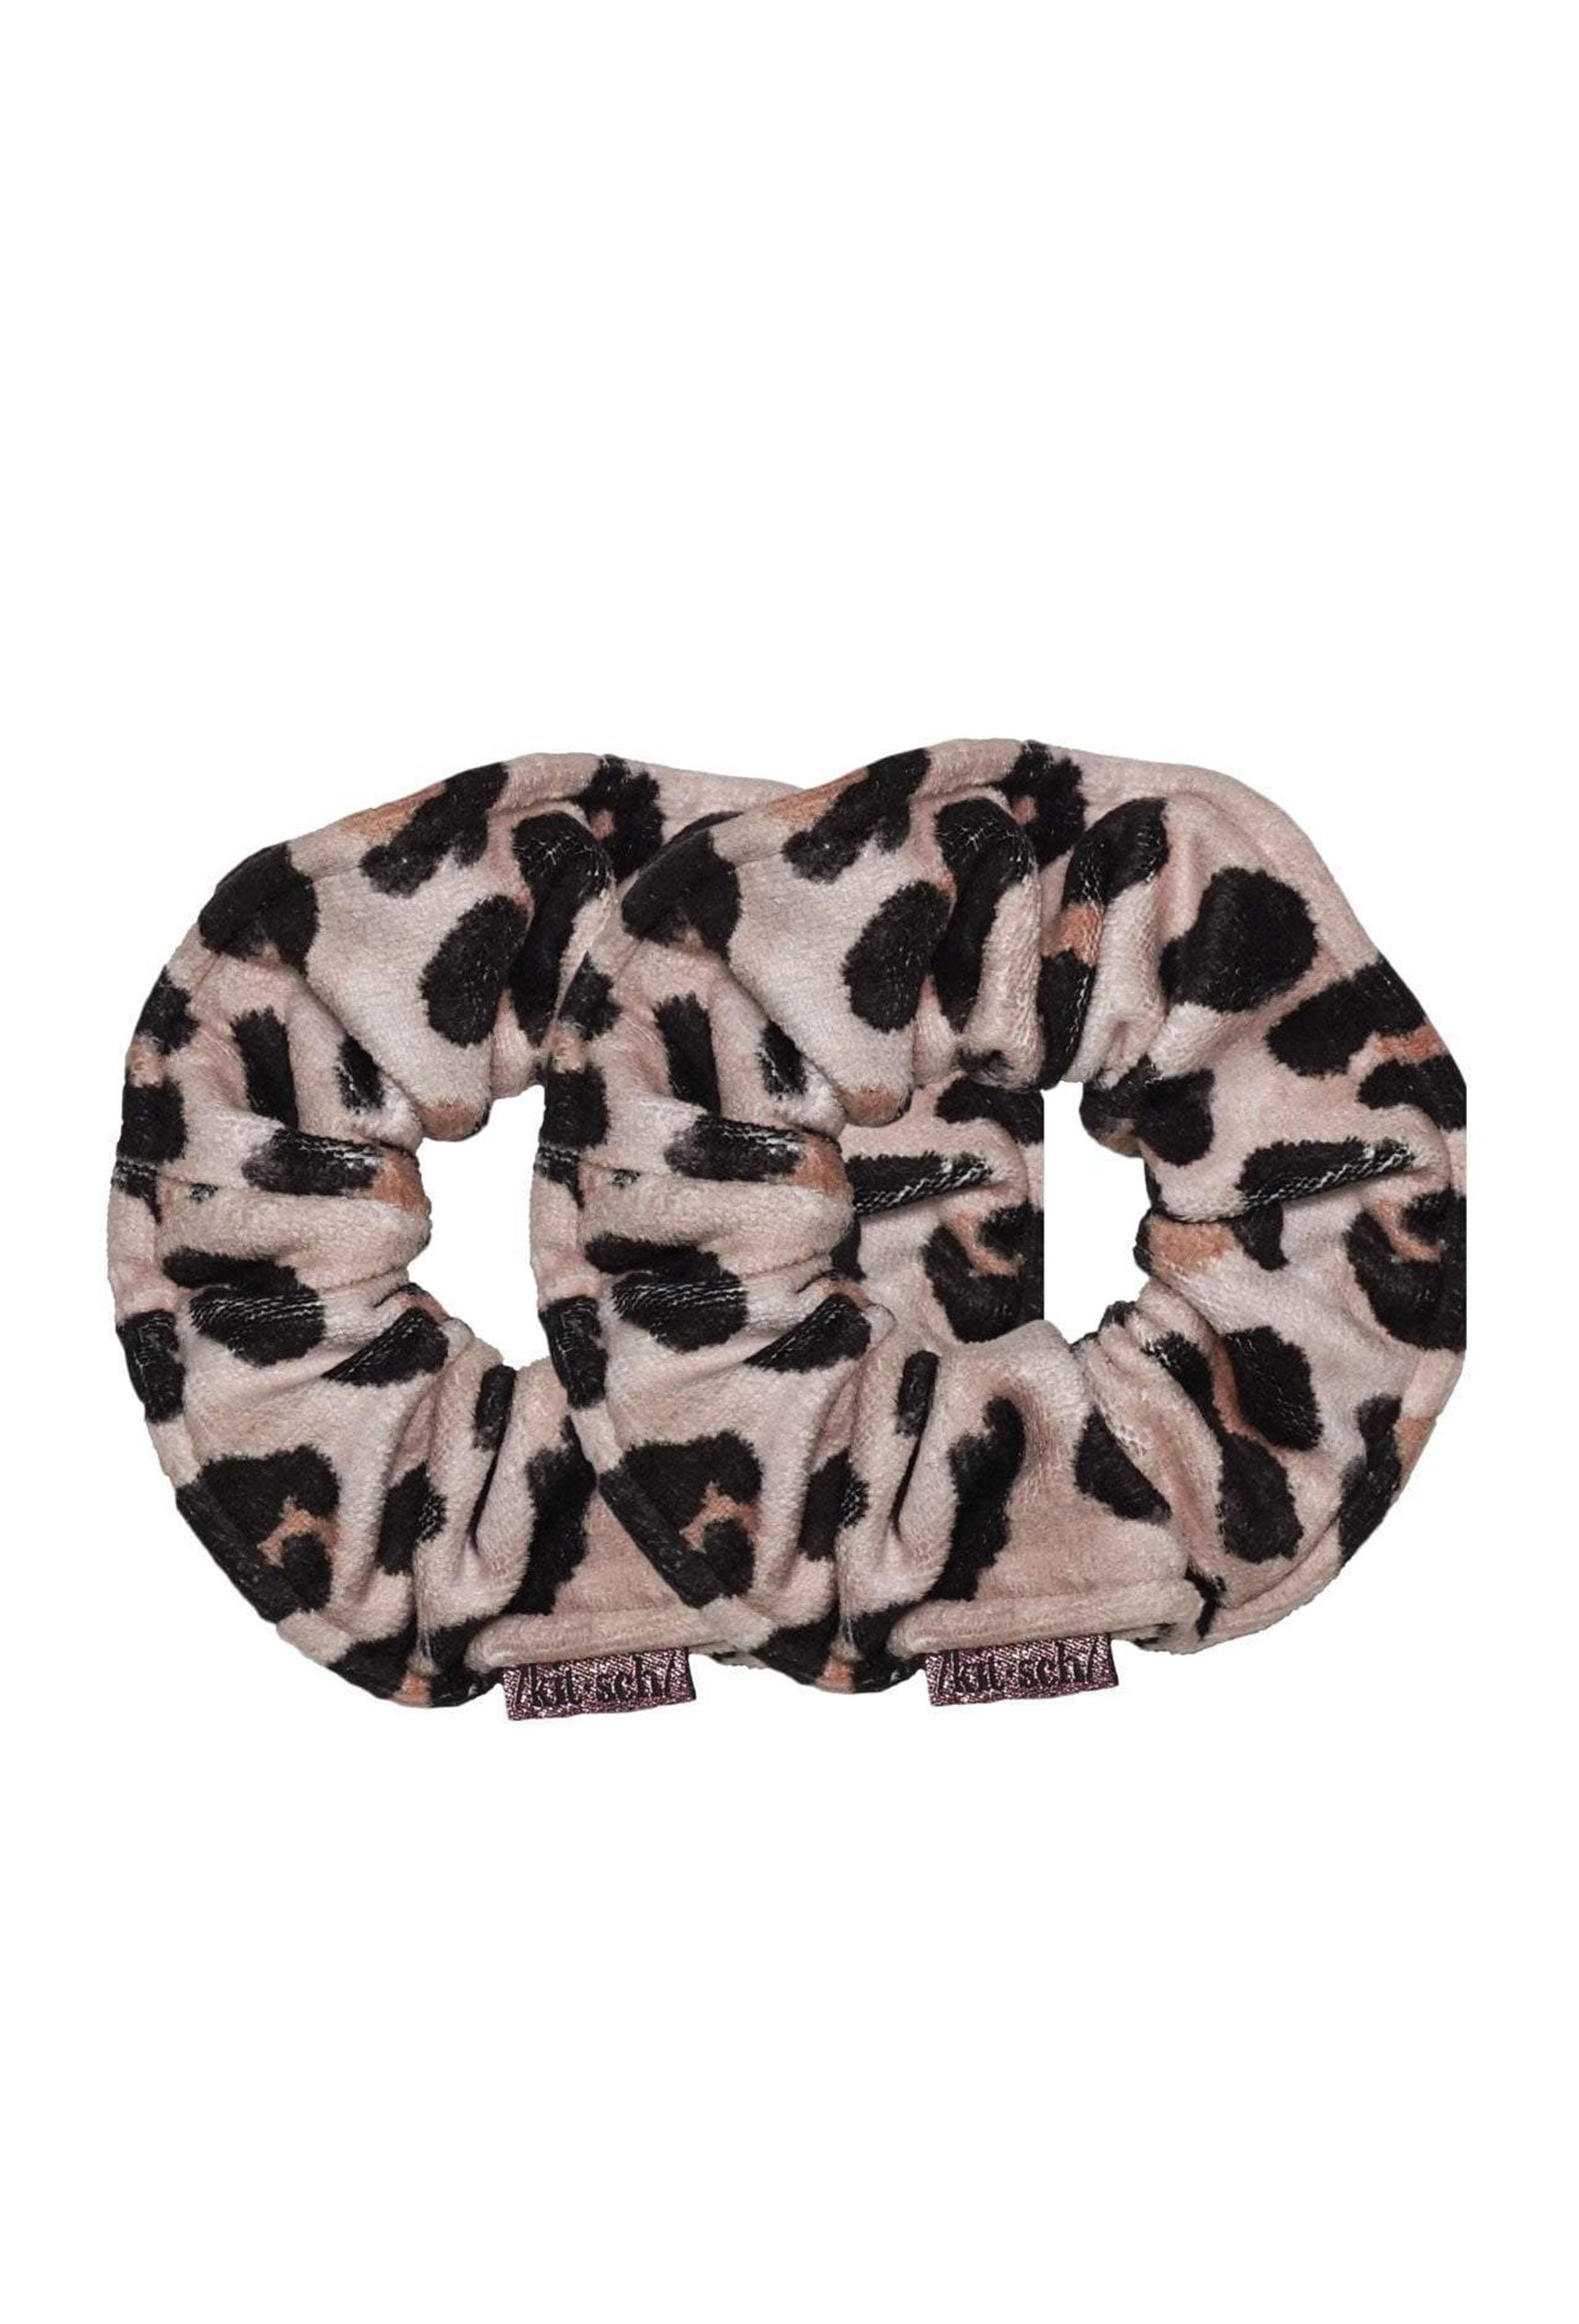 Kitsch Microfiber Towel Scrunchies in Leopard, set of 2 towel scrunchies in leopard print 